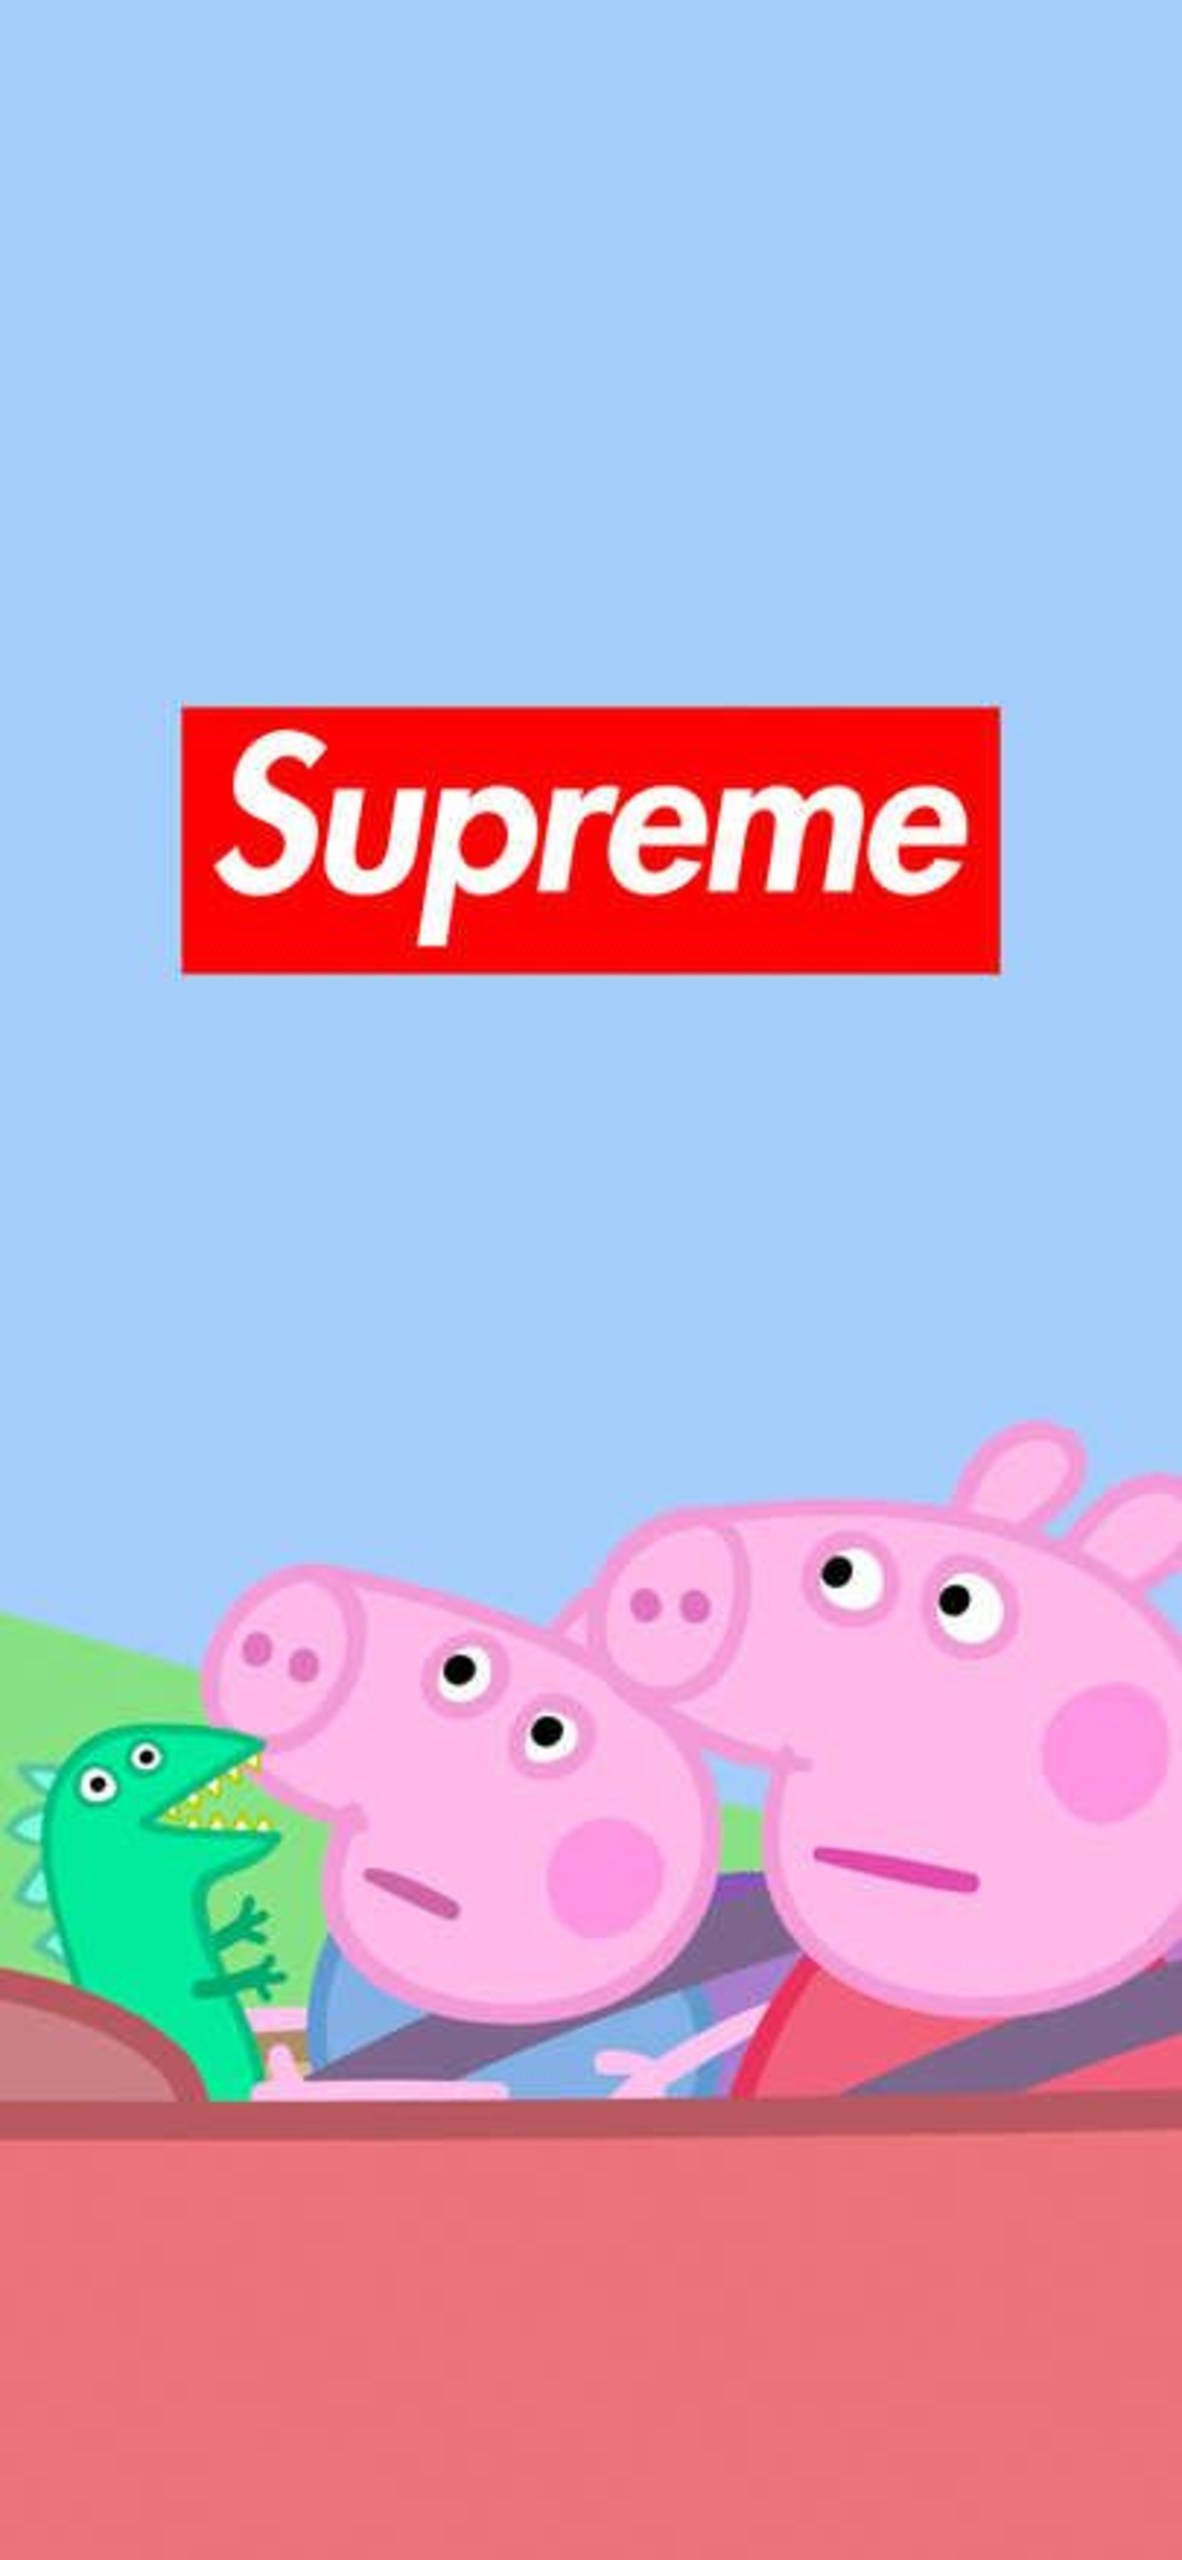 Peppa Pig Supreme Phone Background